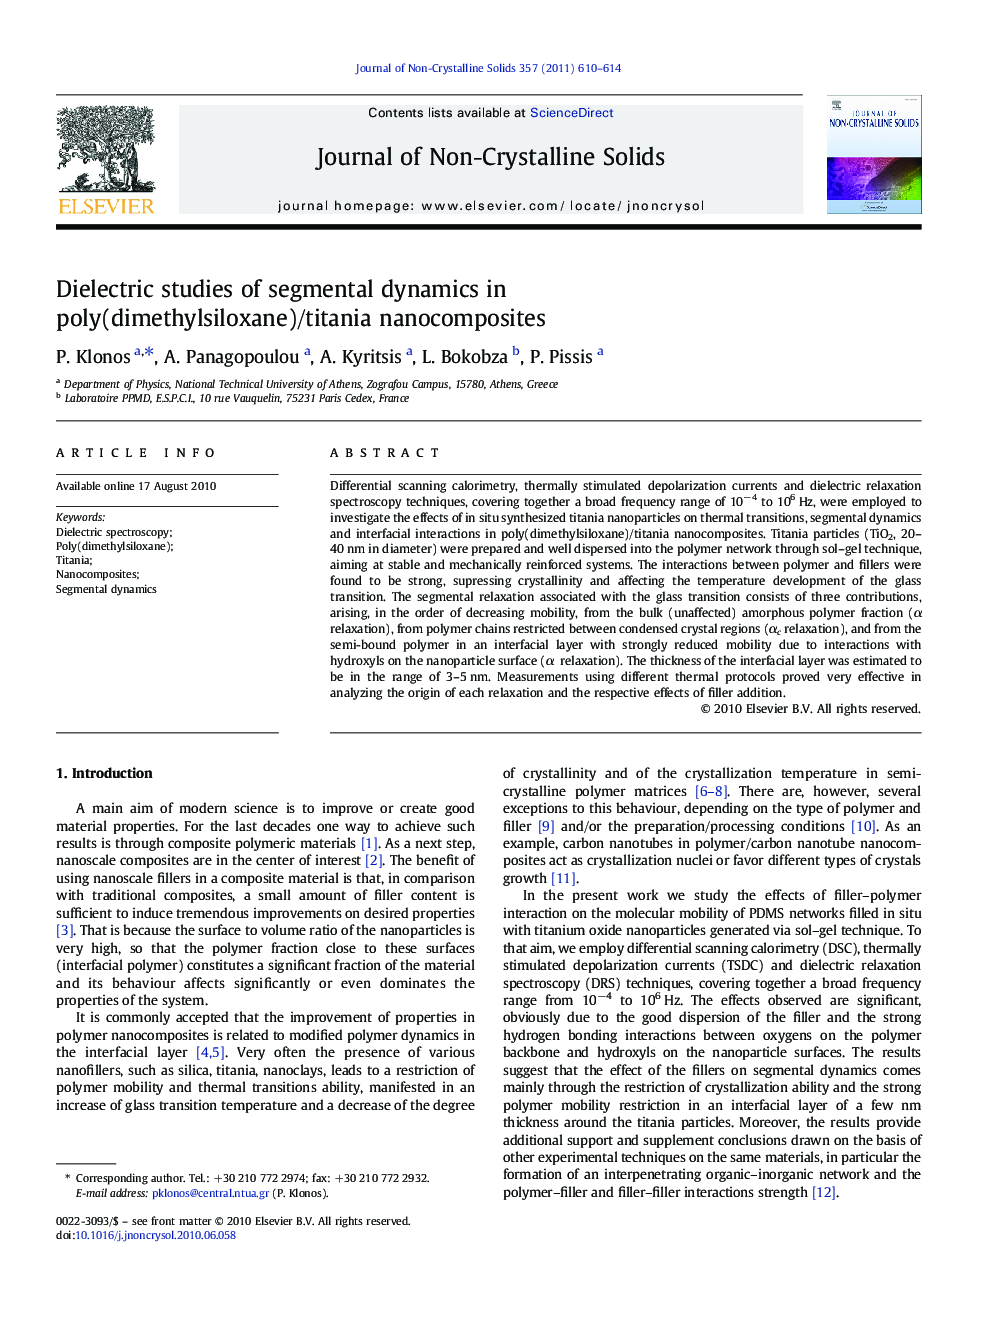 Dielectric studies of segmental dynamics in poly(dimethylsiloxane)/titania nanocomposites